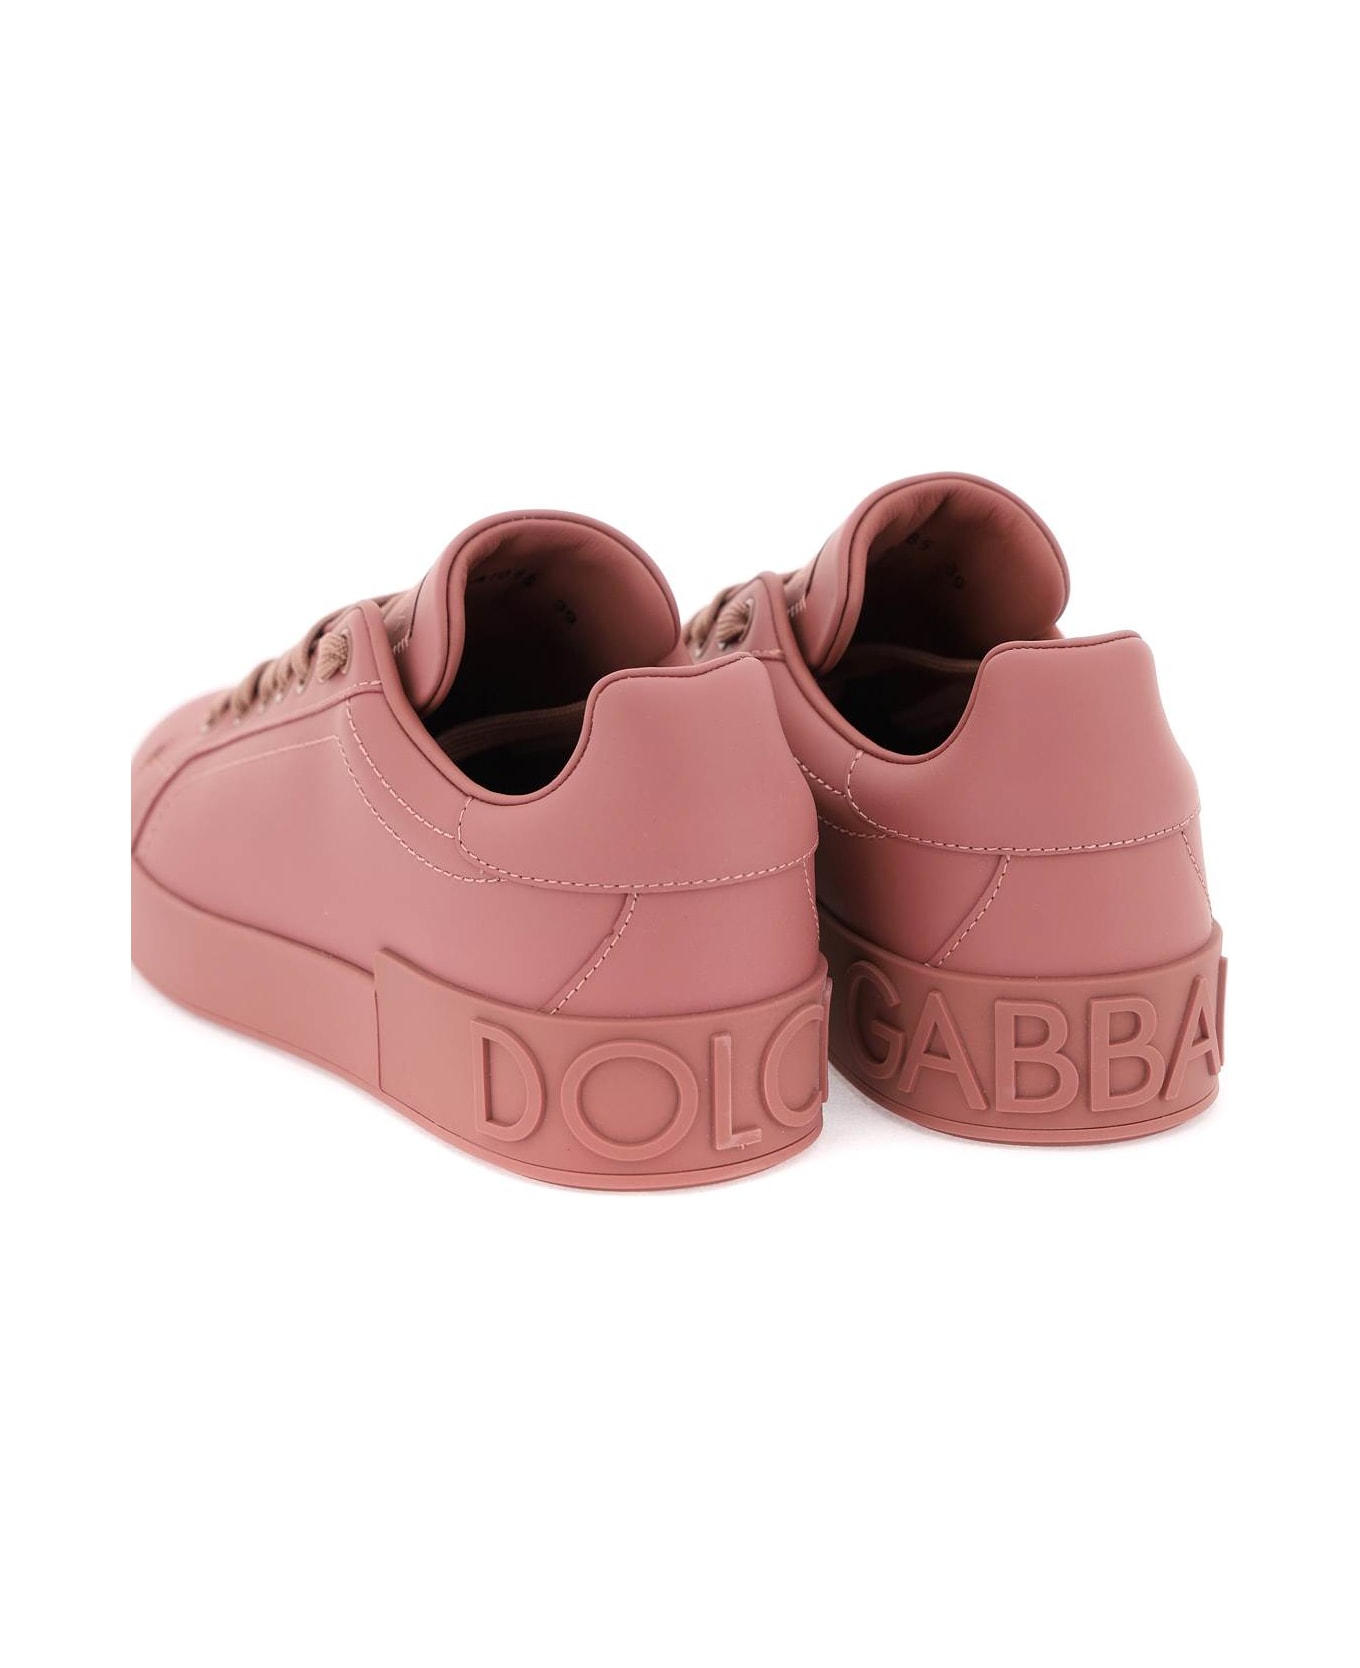 Dolce & Gabbana Portofino Leather Sneakers - Rosa antico